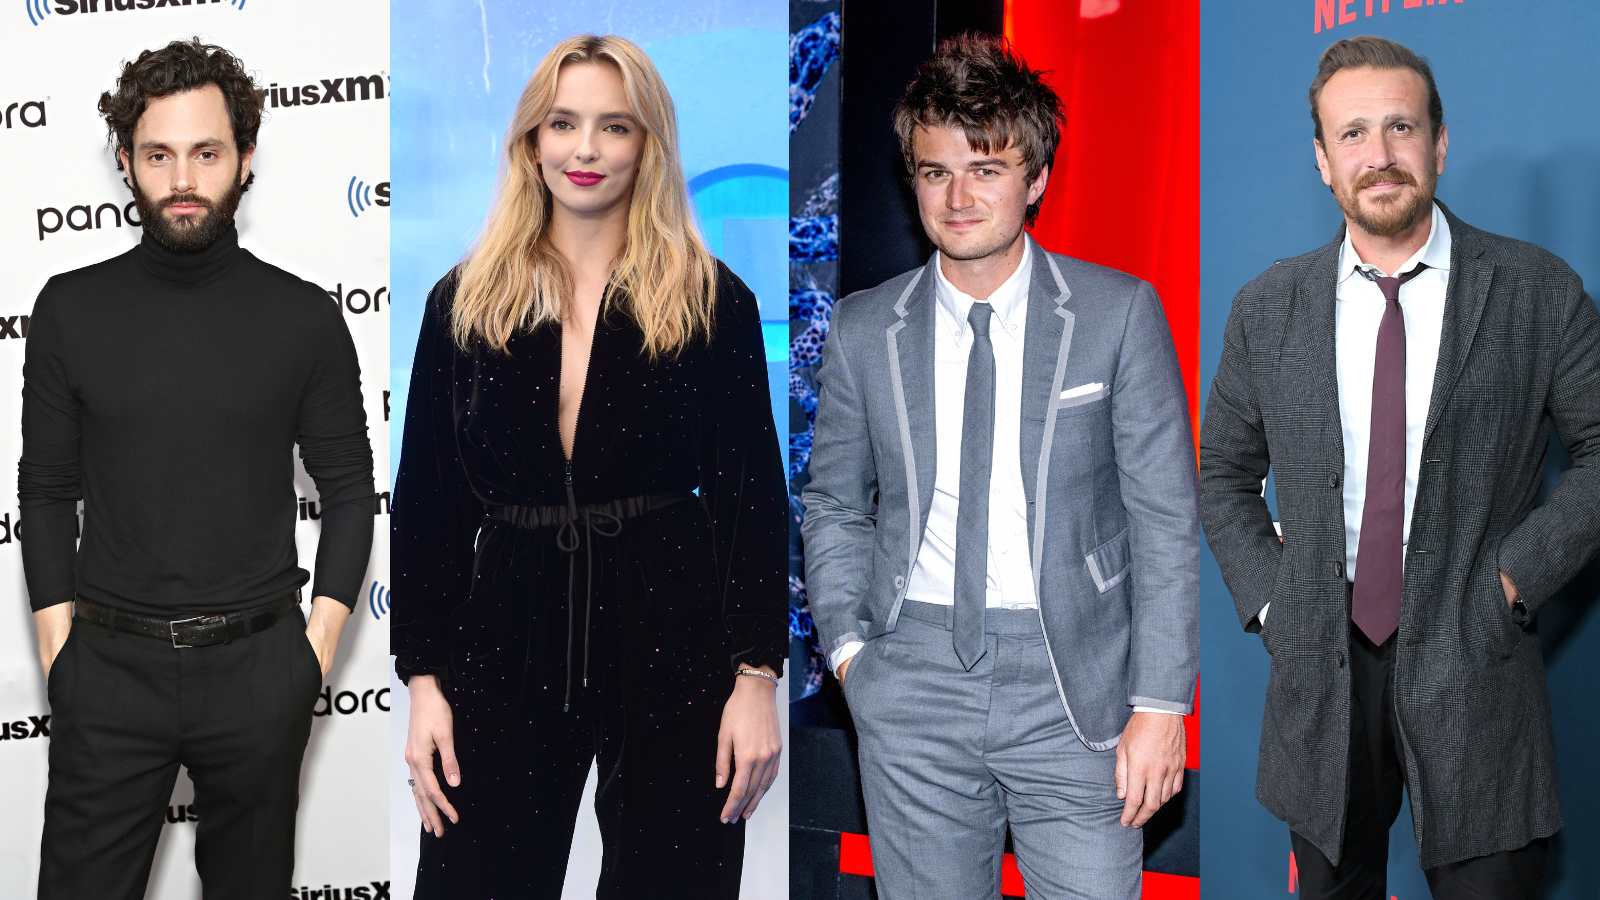 Fantastic Four possible cast: Penn Badgley, Jodie Comer, Joe Keery, Jason Segel